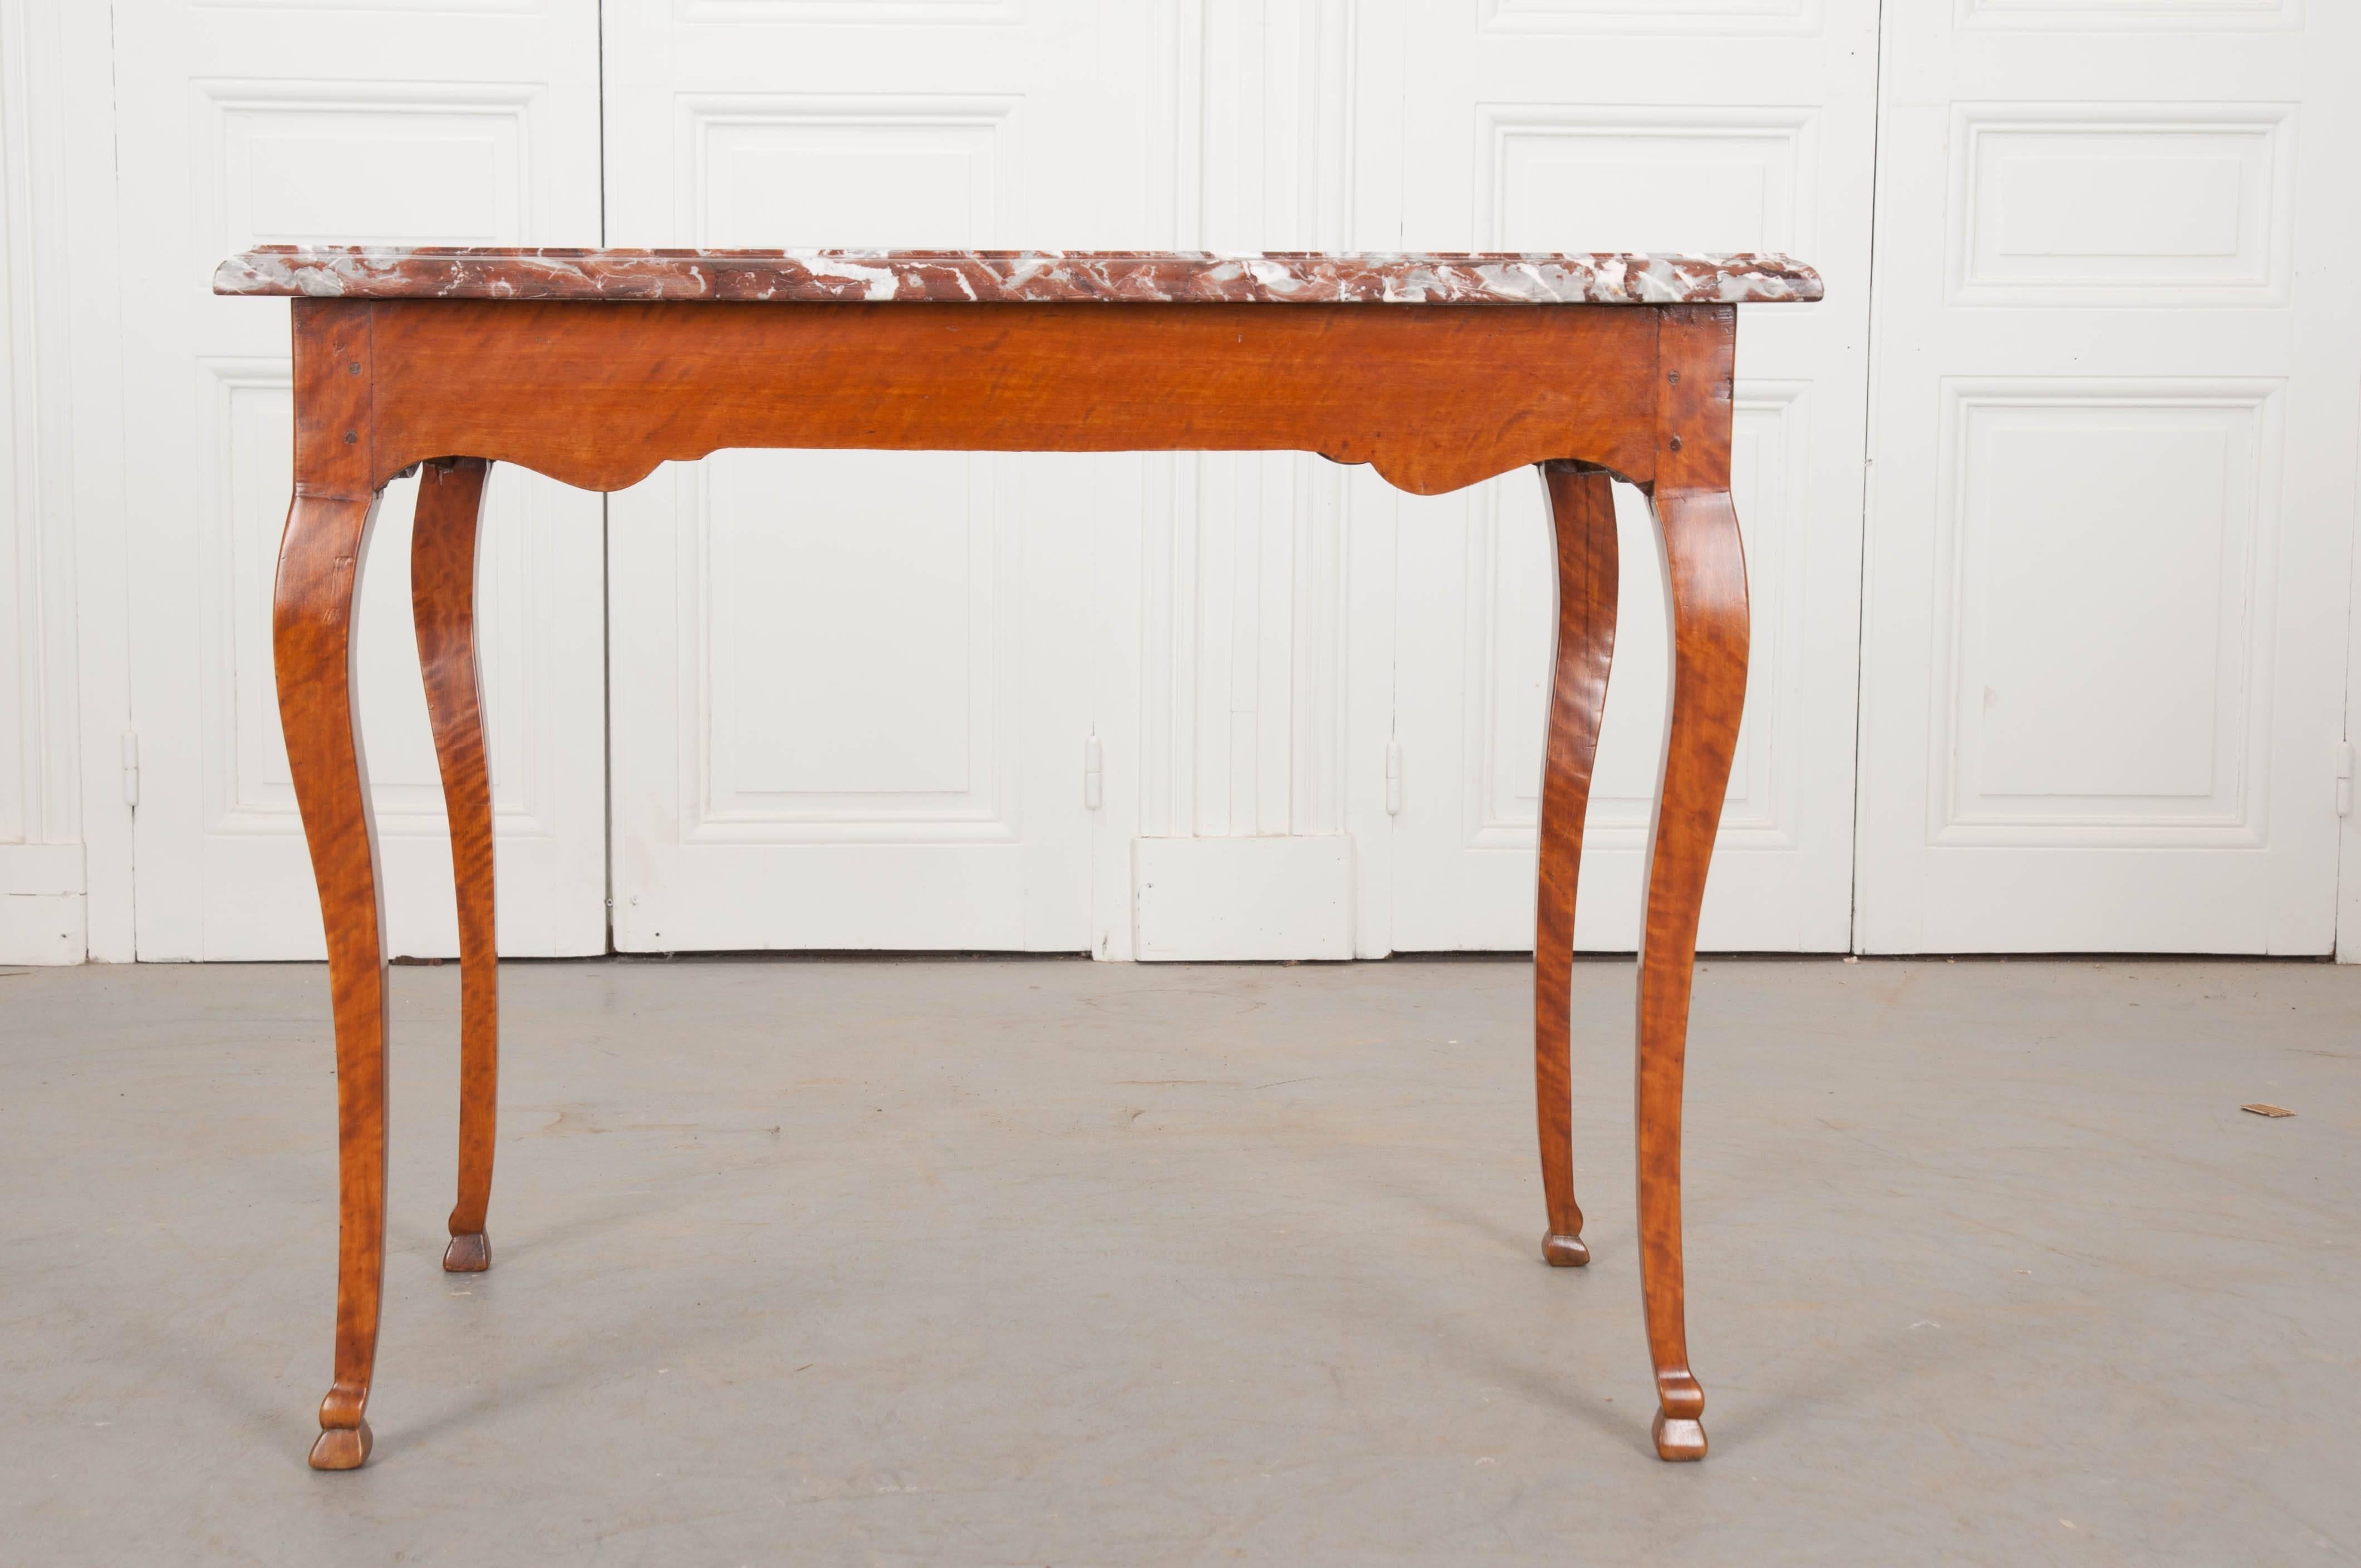 Ein atemberaubender Schreibtisch aus Birke, der zu Beginn des 19. Jahrhunderts in Frankreich hergestellt wurde. Die Marmorplatte hat eine satte zimtfarbene Farbe mit lebhaften weißen Einsprengseln und einer wunderschönen Kante. Der Sockel ist aus